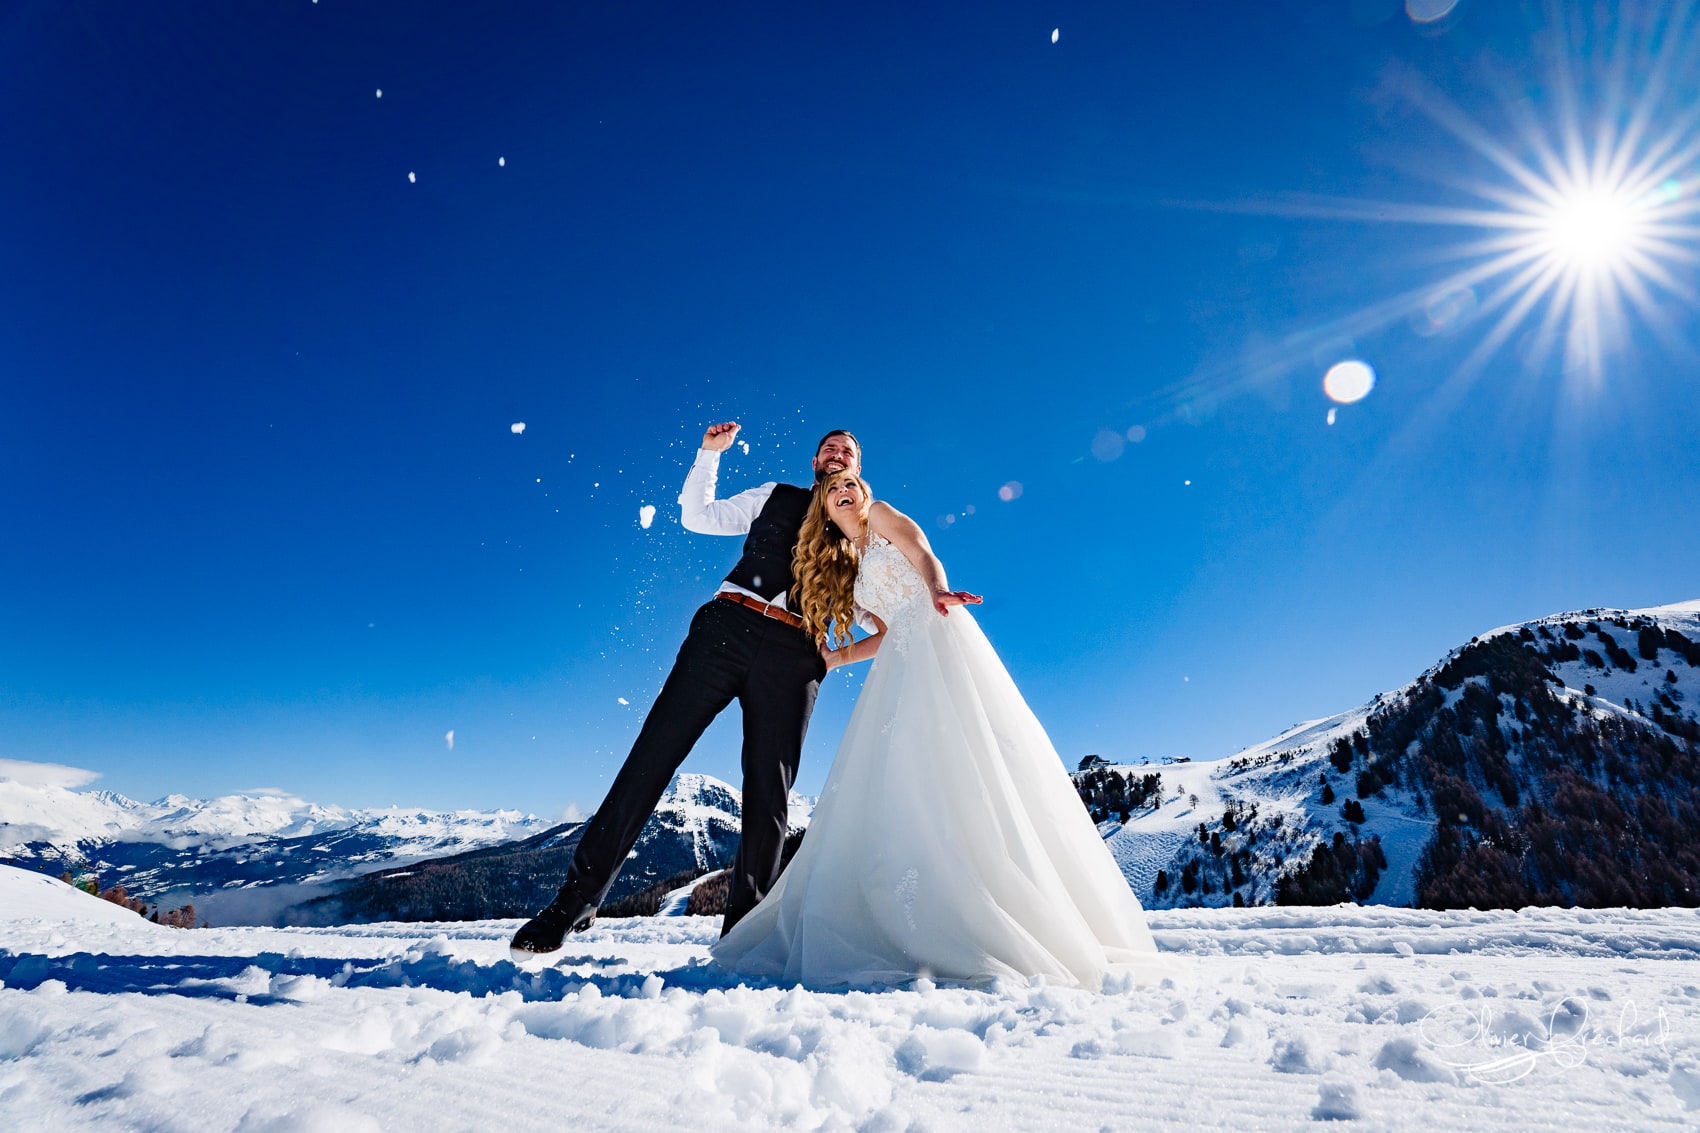 photos de mariage en montagne dans la neige